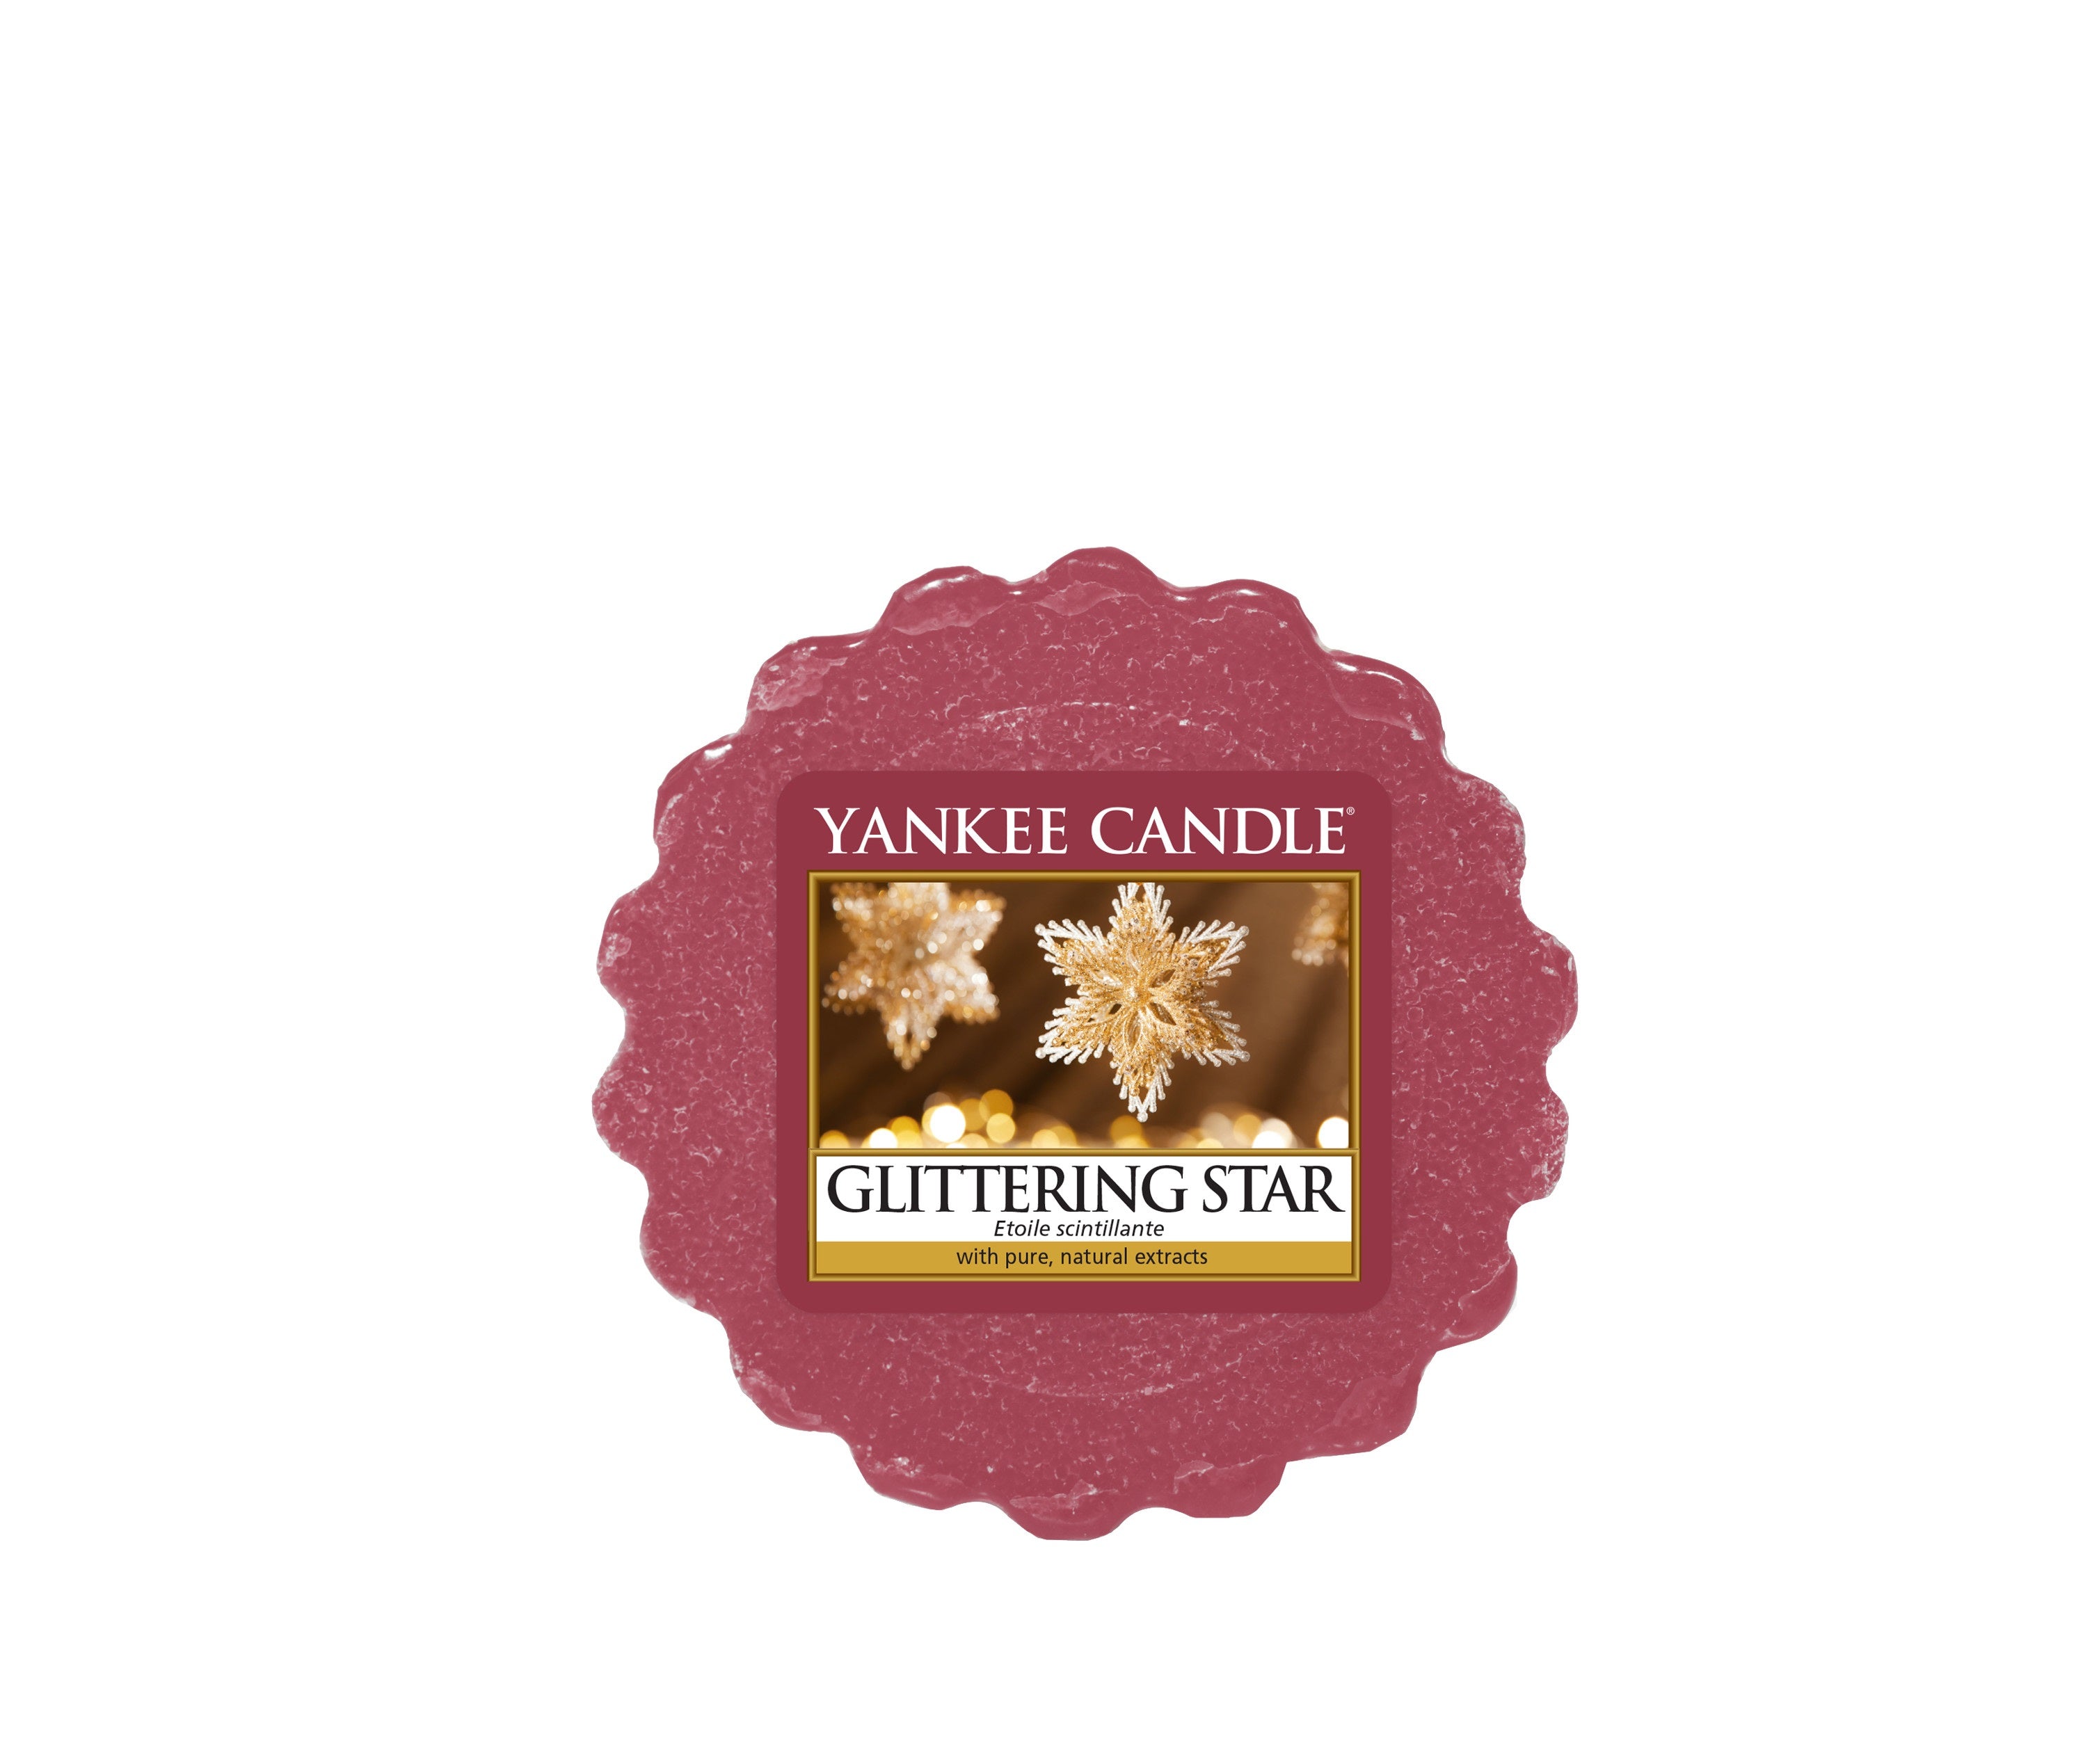 GLITTERING STAR -Yankee Candle- Tart